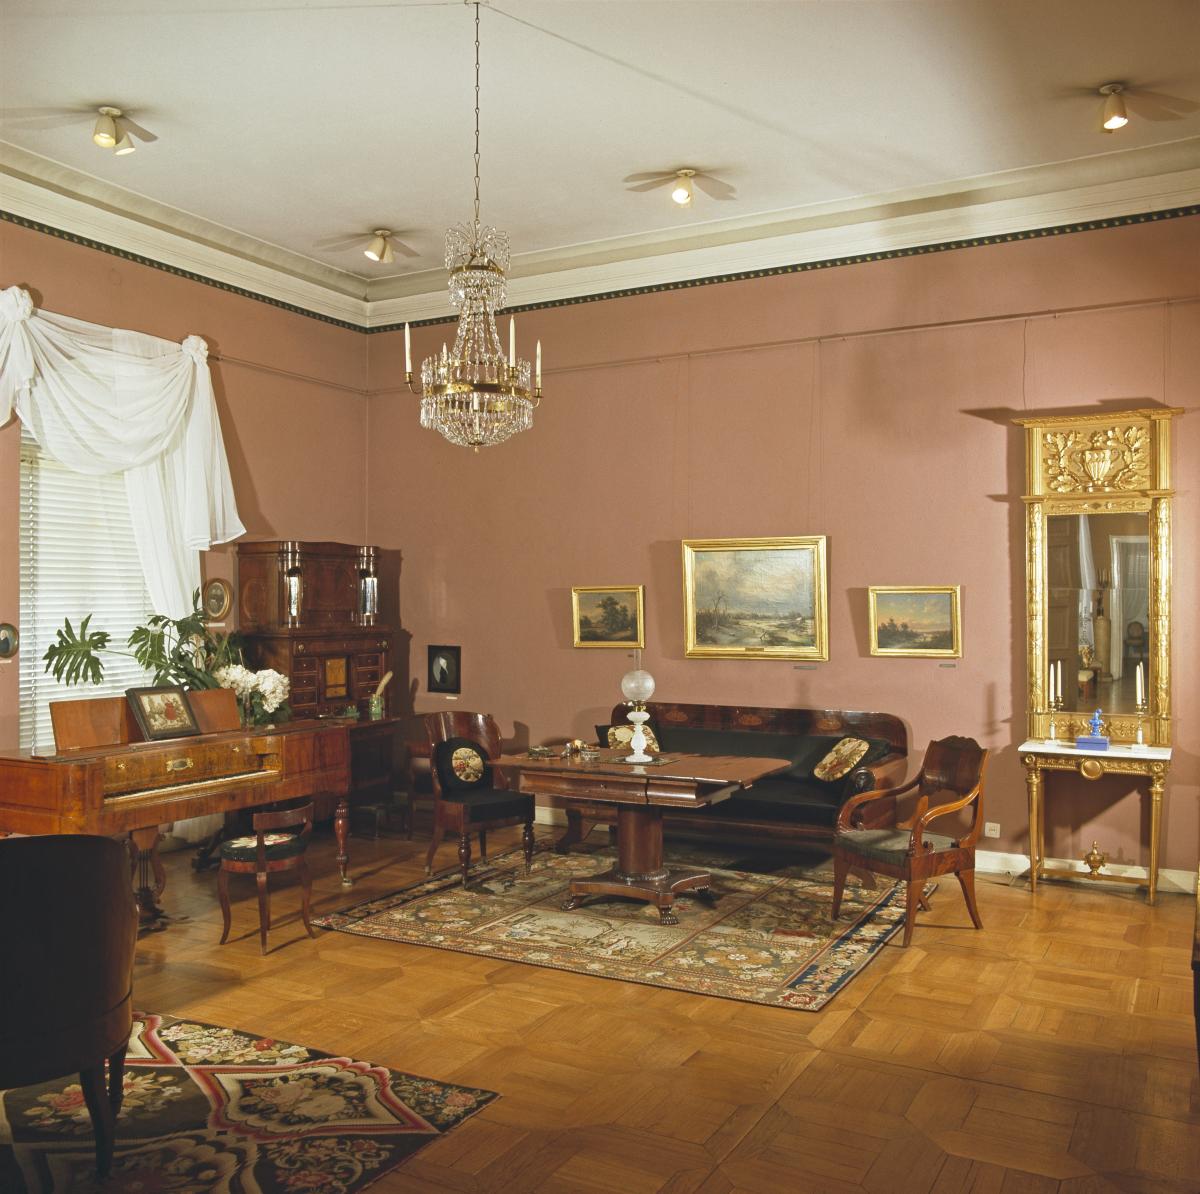 Klaffipiironki ja biedermeier-kalusto huoneessa, jossa on vaaleanpunainen tapetti